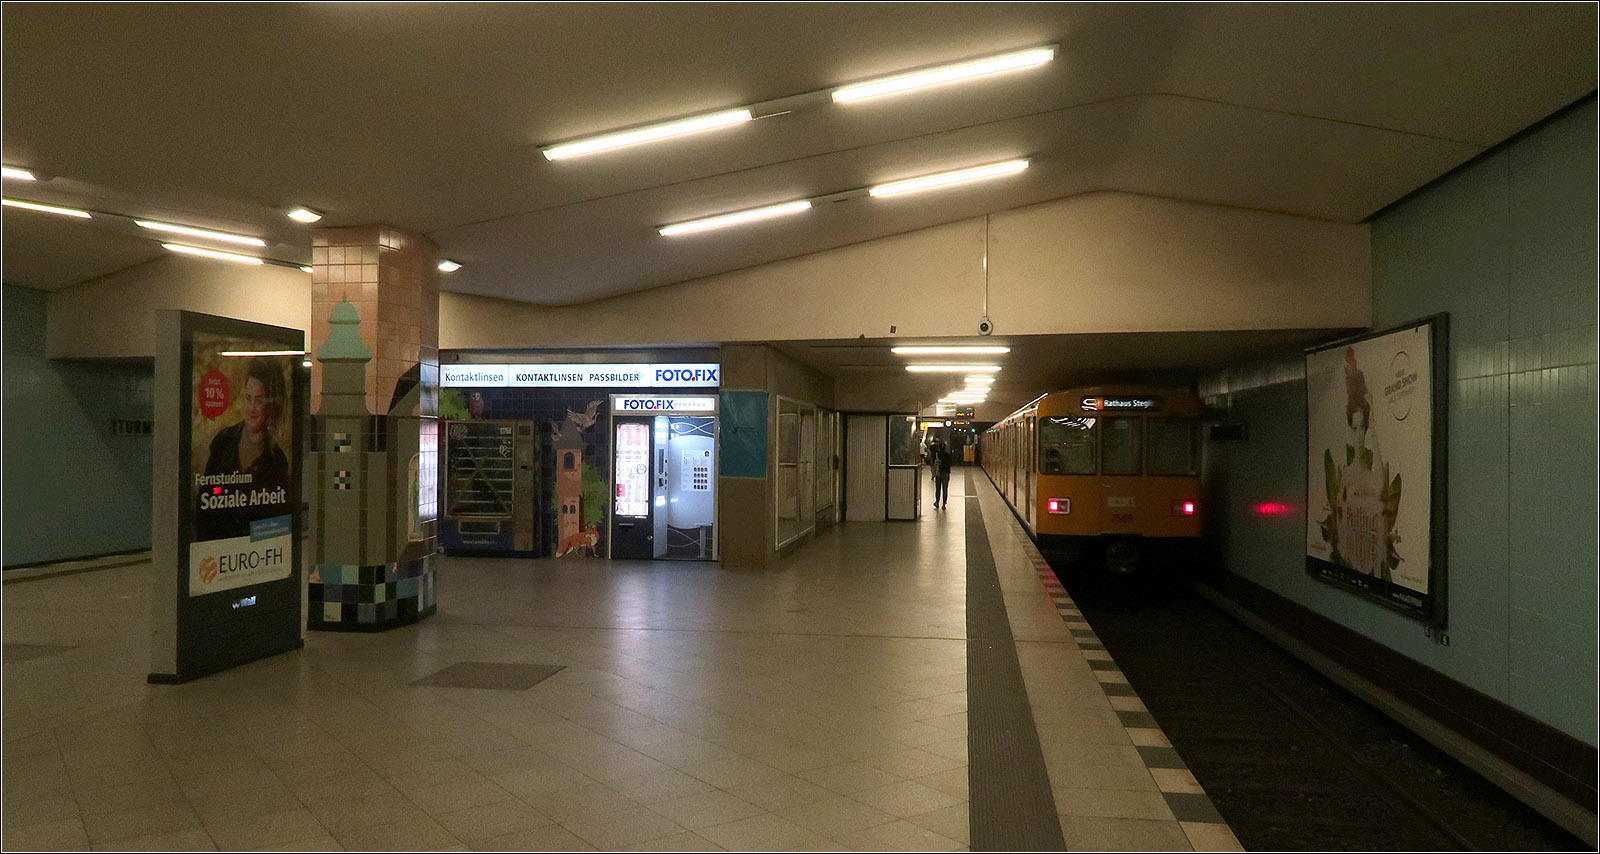 Geheimnisse der Berliner U-Bahn -

Schon beim Bau der U9 in den 1950iger Jahren wurde der Bahnhof Turmstraße als Turmbahnhof für eine hier kreuzende U-Bahnlinie vorbereitet. So sollte die heutige U5 hier die U9 kreuzen. Dafür wurde in der -1 Ebene ein Teil des Bahnsteiges mitgebaut. Man kann dies in der Station der U9 erkennen: da wo die Decke gerade verläuft befindet sich der obere Bahnsteigteil. Die Kreuzung würde jeweils etwa in Bahnsteigmitte wo eine Treppenanlage die beiden Bahnsteige auf kürzestem Weg miteinander verbunden hätten. Ein Treppenaufgang würde sich dort befinden, wo sich unter anderem der Fotoautomat befindet. Von dort ginge es dann auf ein Zwischenpodest und dann nach rechts und links weiter zum U5-Bahnsteig. Teile der Treppe wurde inzwischen für einen weiteren Ausgang zugänglich gemacht.

In ferner Zukunft könnte die U5 hier noch Wirklichkeit werden, allerdings wird hier demnächst eine neue Straßenbahnstrecke vom Hauptbahnhof her kommend den U-Bahnhof Turmstraße erreichen.

14.07.2023 (M)